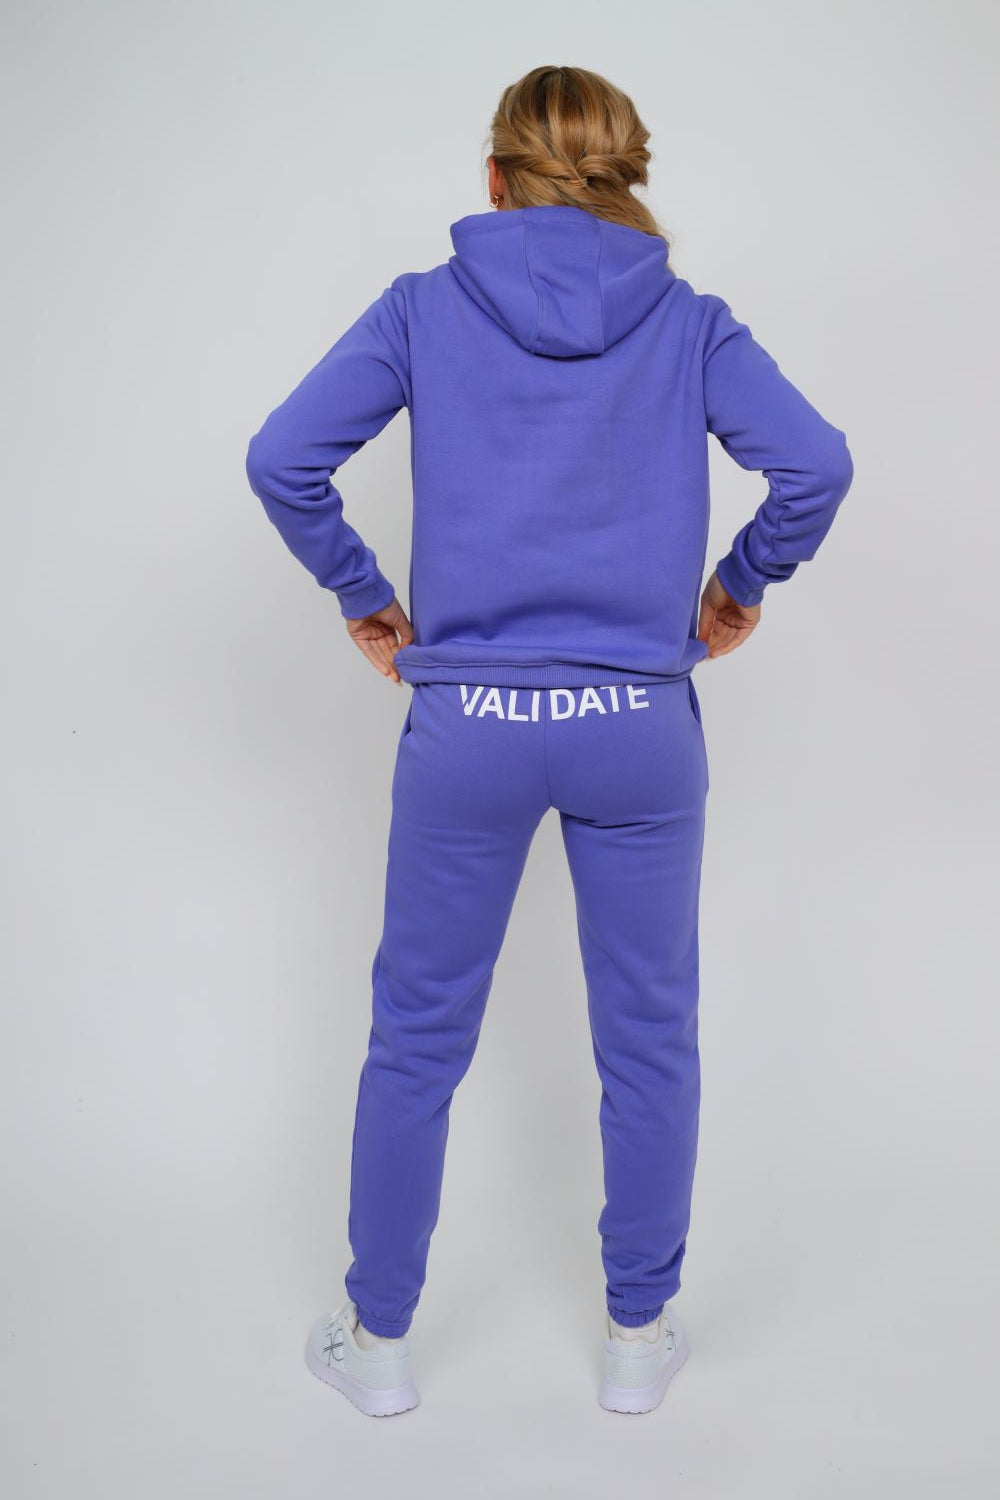 Validate Purple Emma Hoodie | Validate Fashion Hoodies & Sweatshirts | Hertfordshire